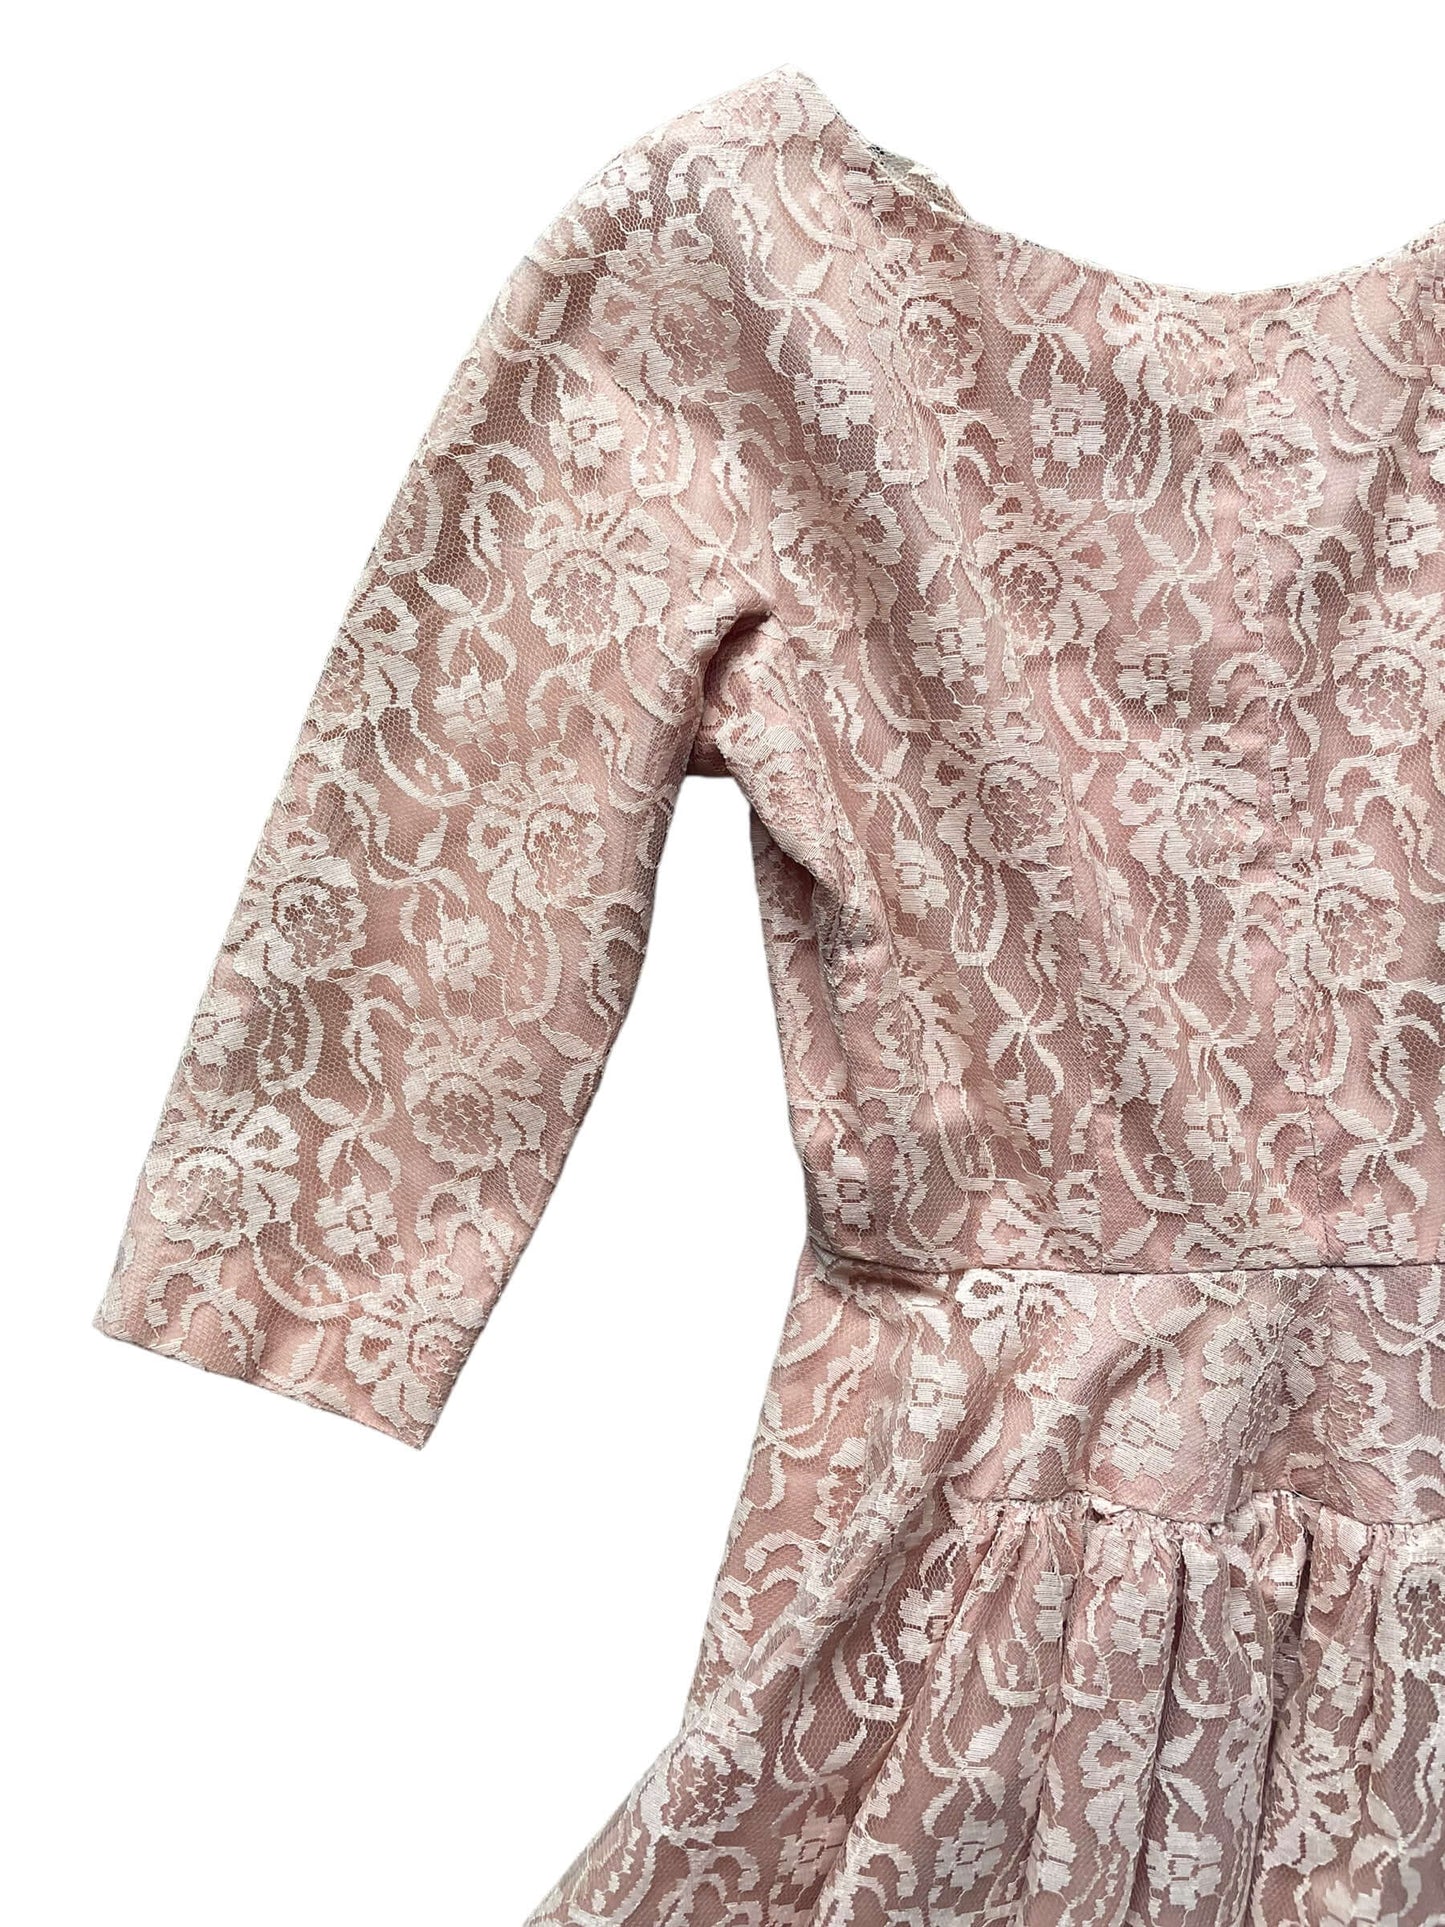 Back left shoulder view of Vintage 1950s Handmade Pink Lace Formal Dress |  Barn Owl Vintage Dresses | Seattle Vintage Ladies Clothing